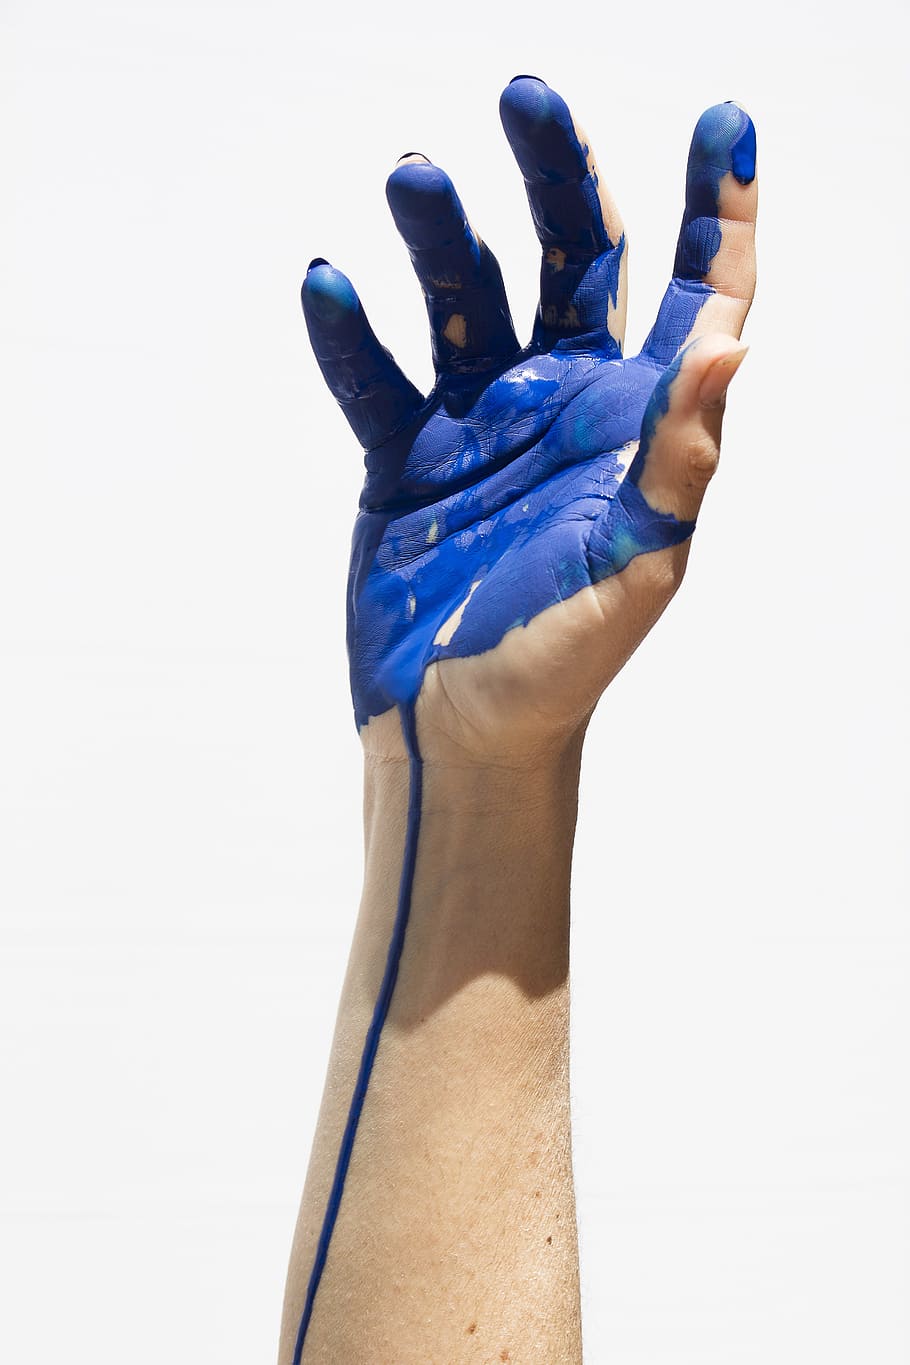 右, 人間, 手, ペイント, 人間の手, 色, 青, 絵画, 人体の一部, 身振り